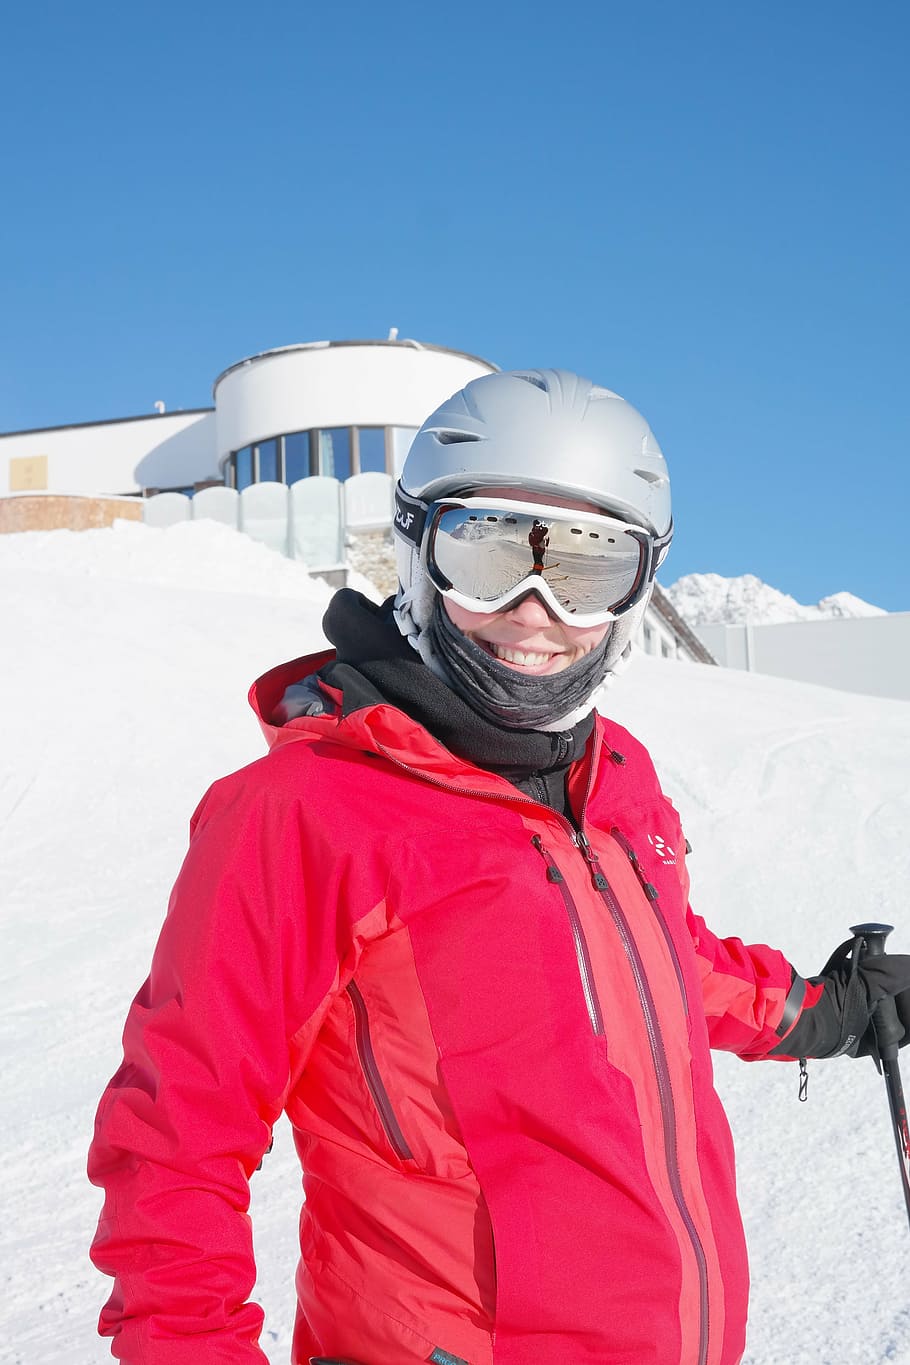 esquiador, esquí, pista de esquí, nieve, frío, diversión, pista, esquiadores, deportes de invierno, deporte